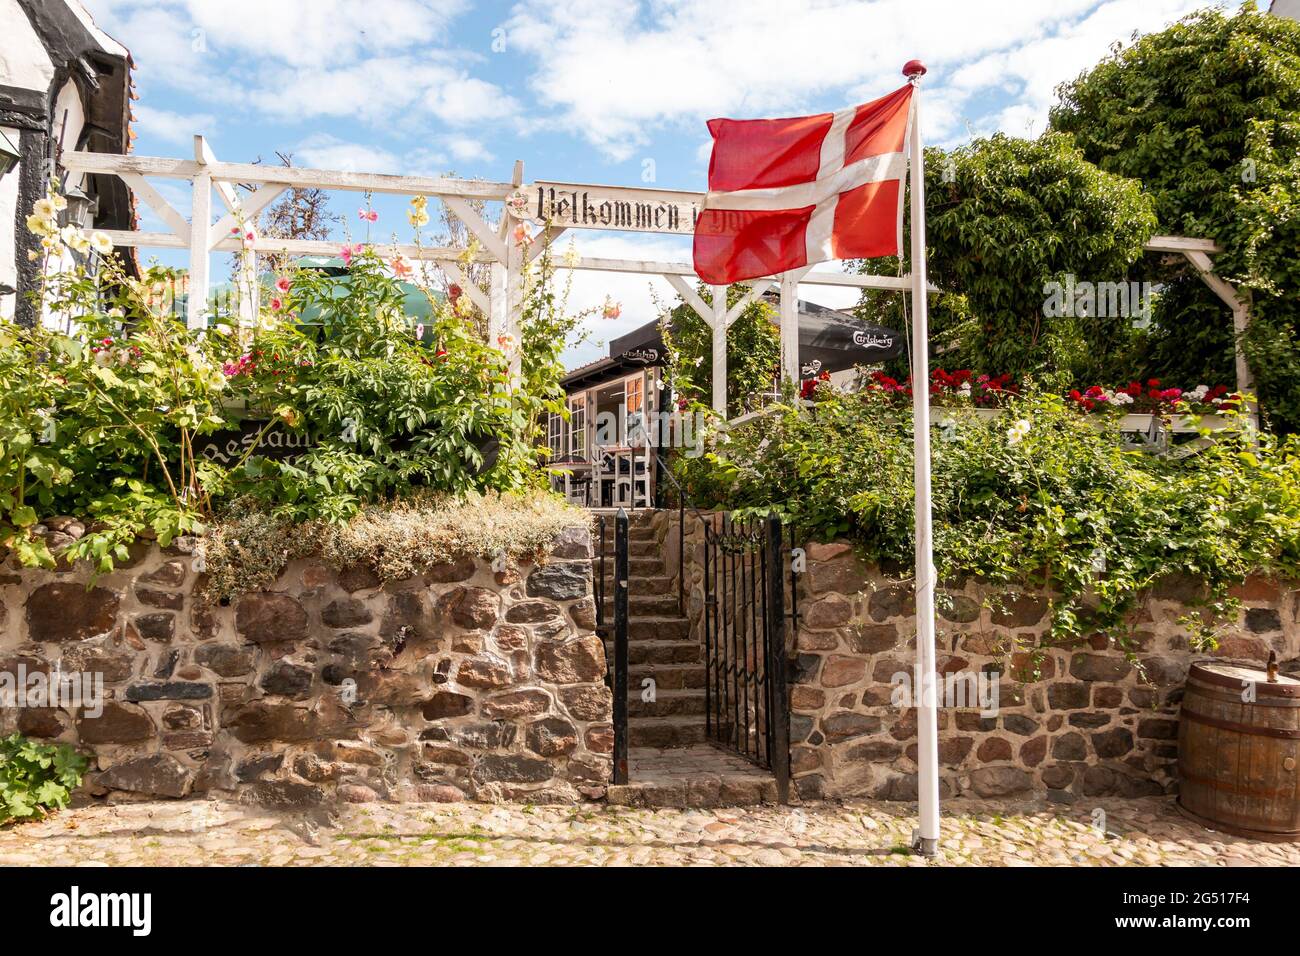 Ebeltoft, Danemark - 20 juillet 2020 : ancien restaurant, maison à colombages, drapeau de Dannebrog, Banque D'Images